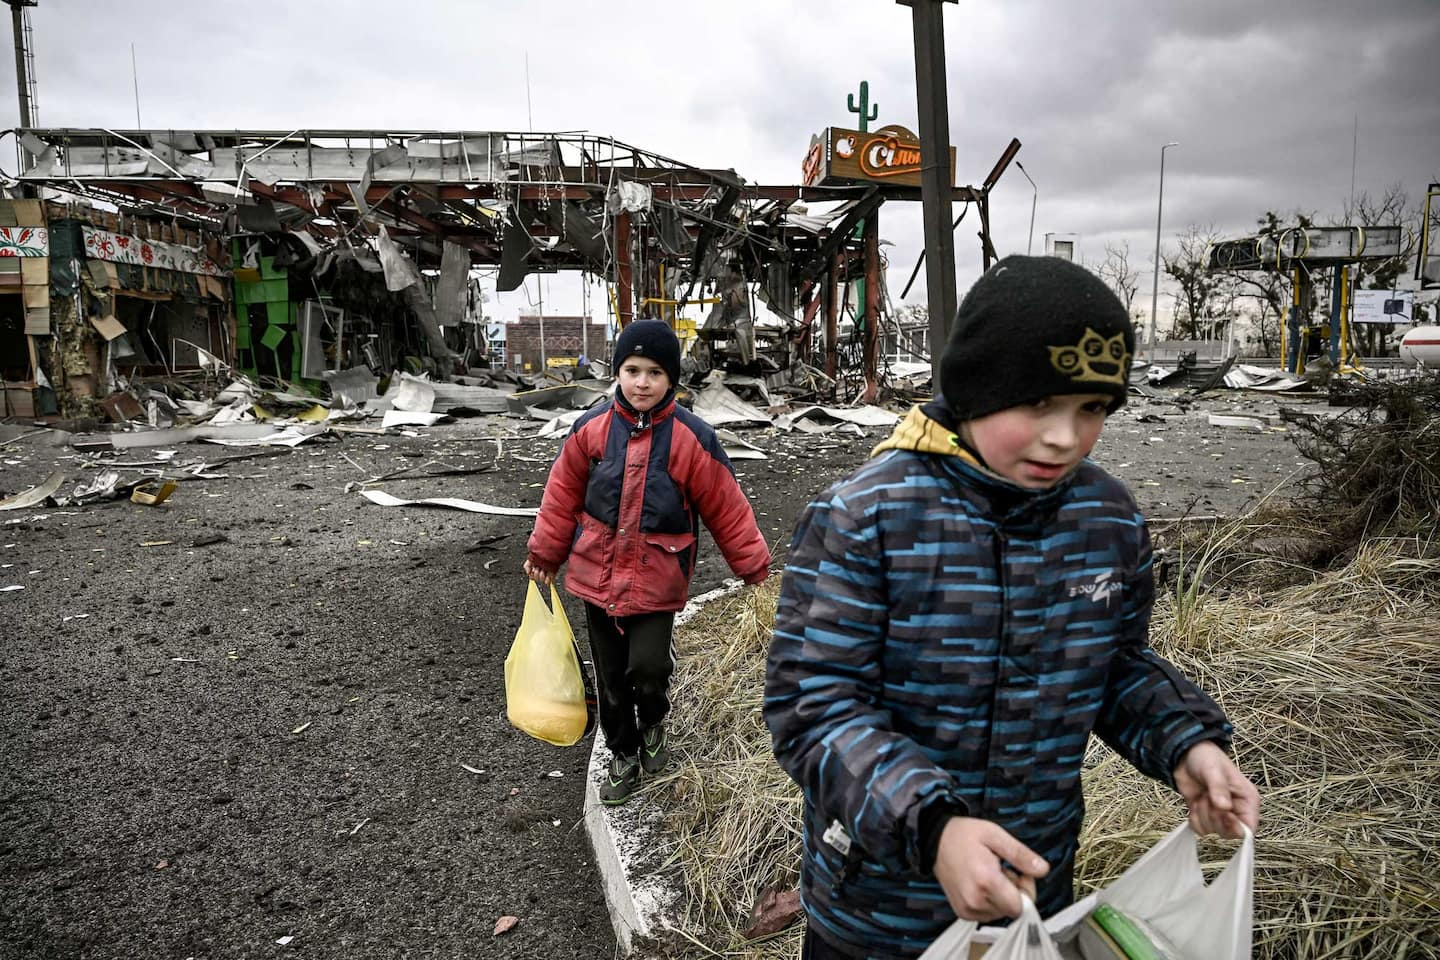 Ukraine: help children and their families